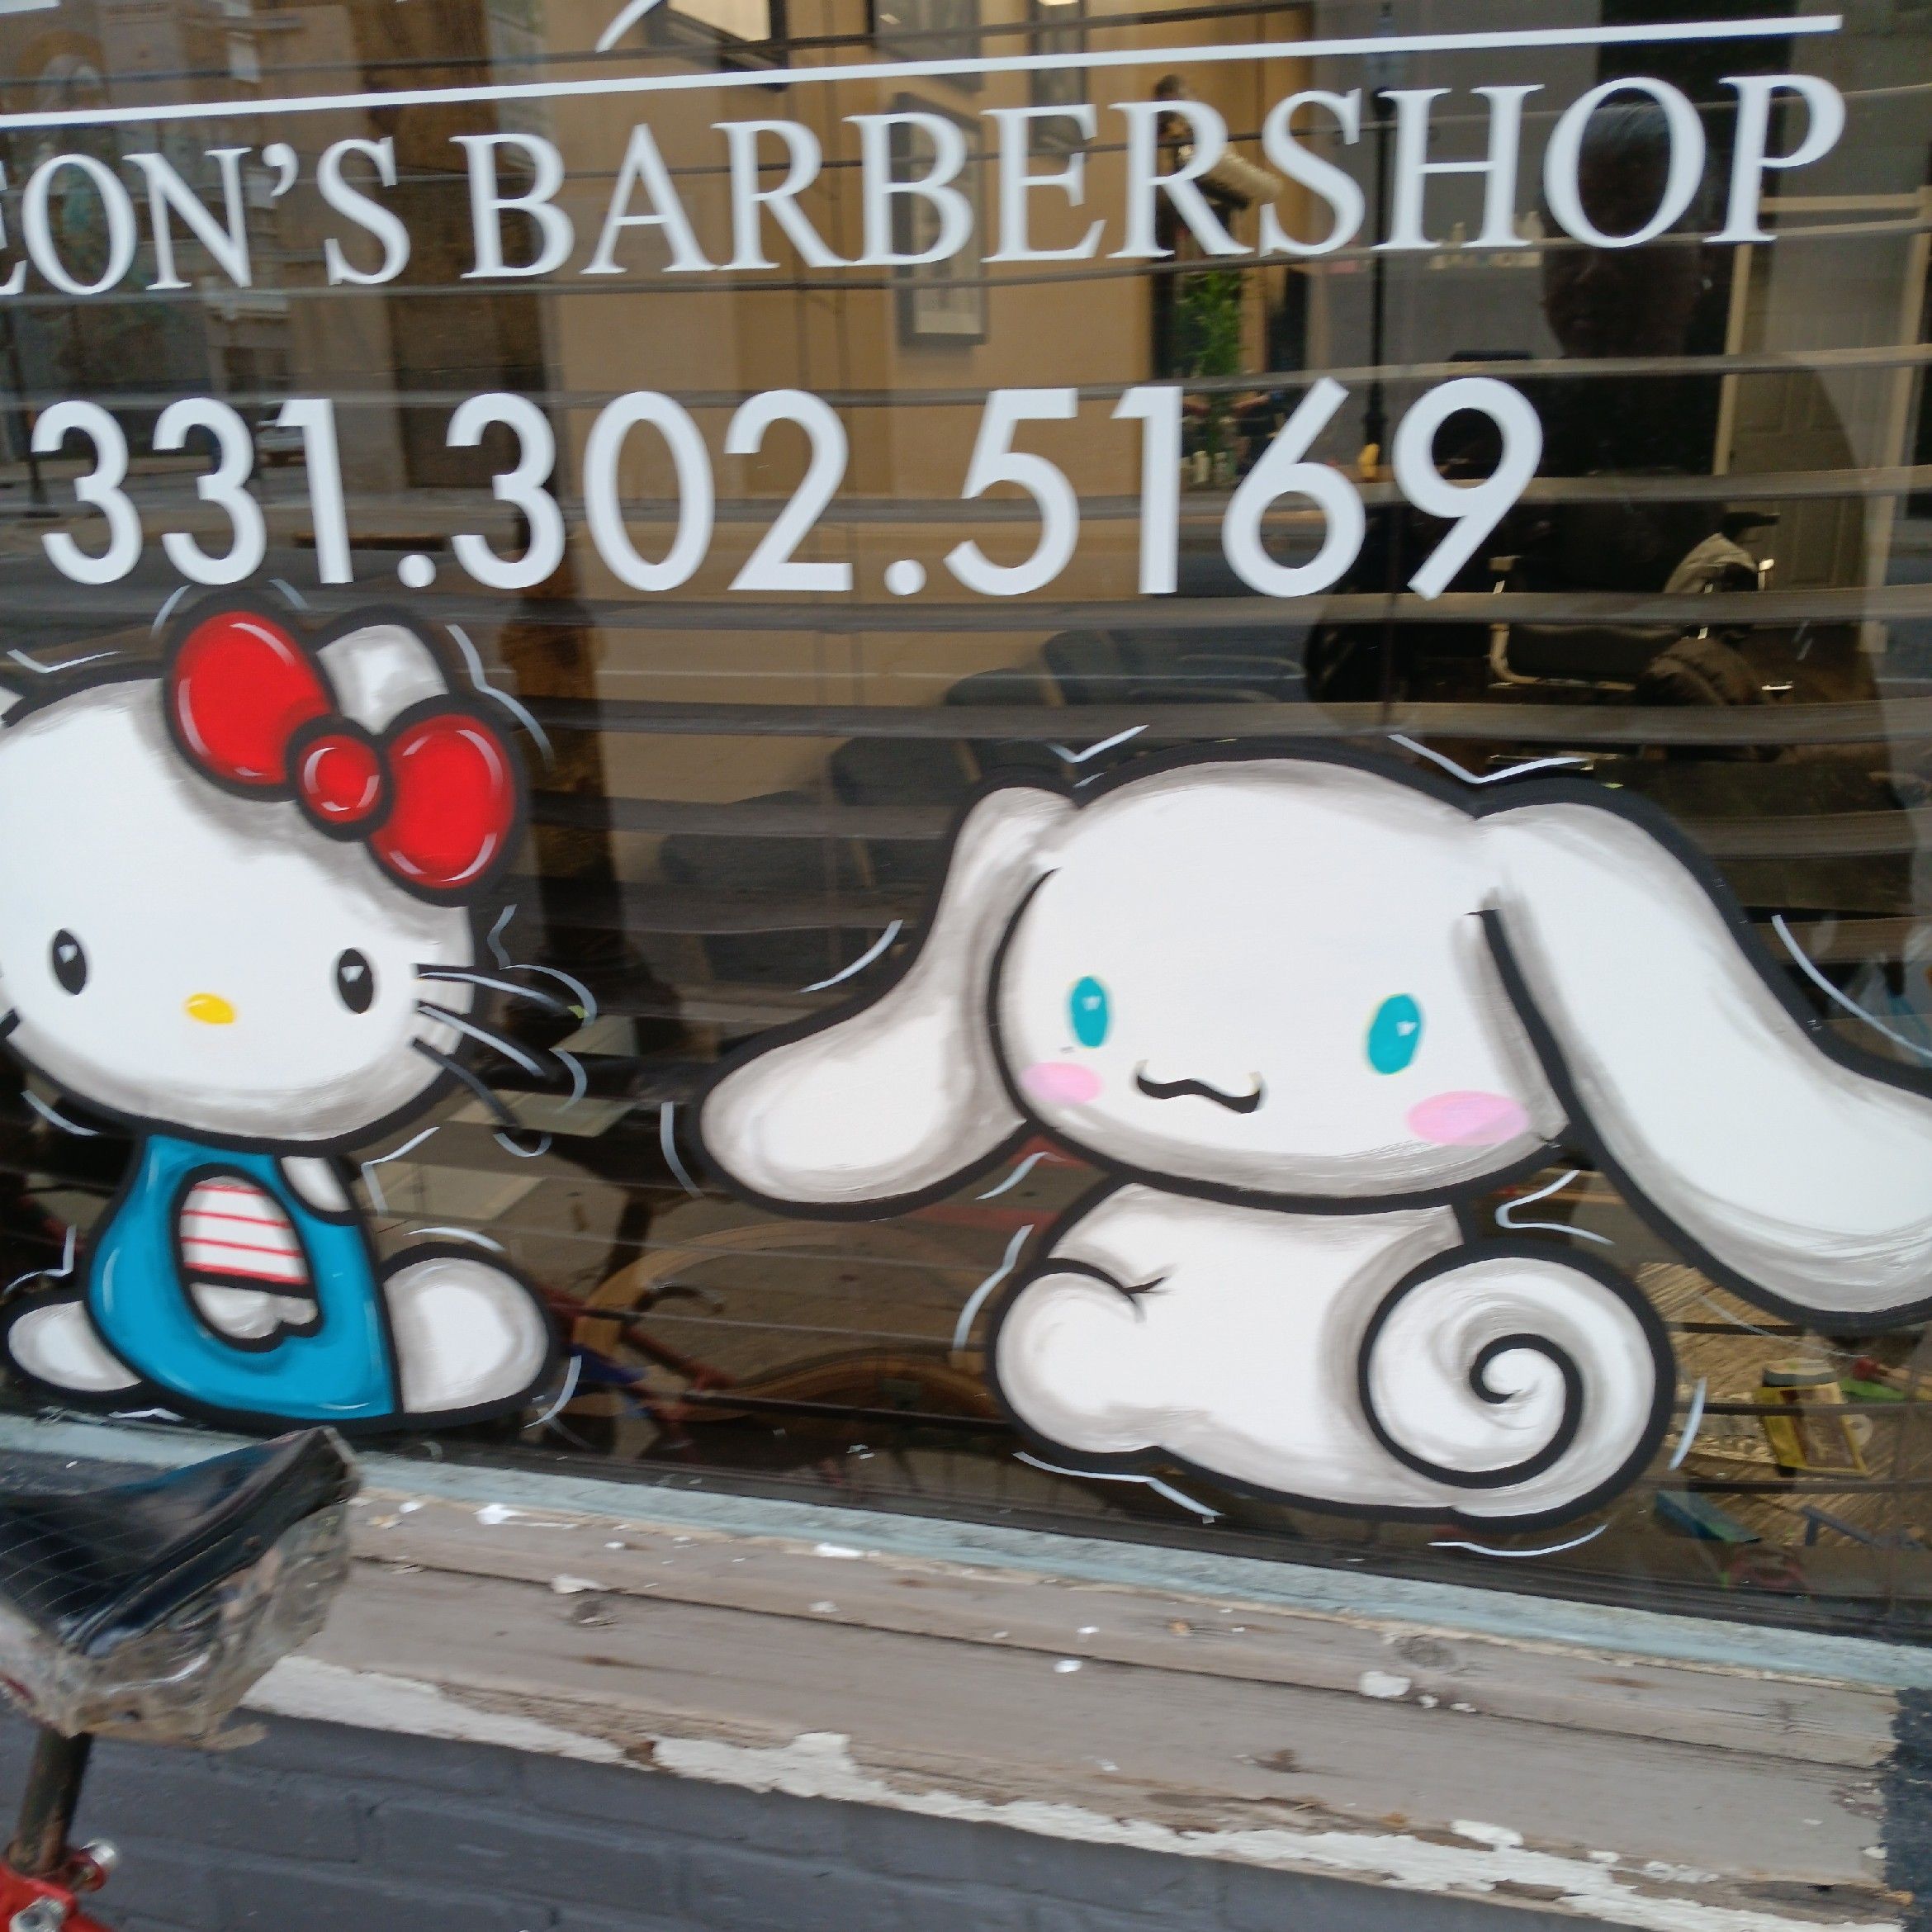 Leon's Barbershop, 104 E Galena Blvd, Aurora, 60505